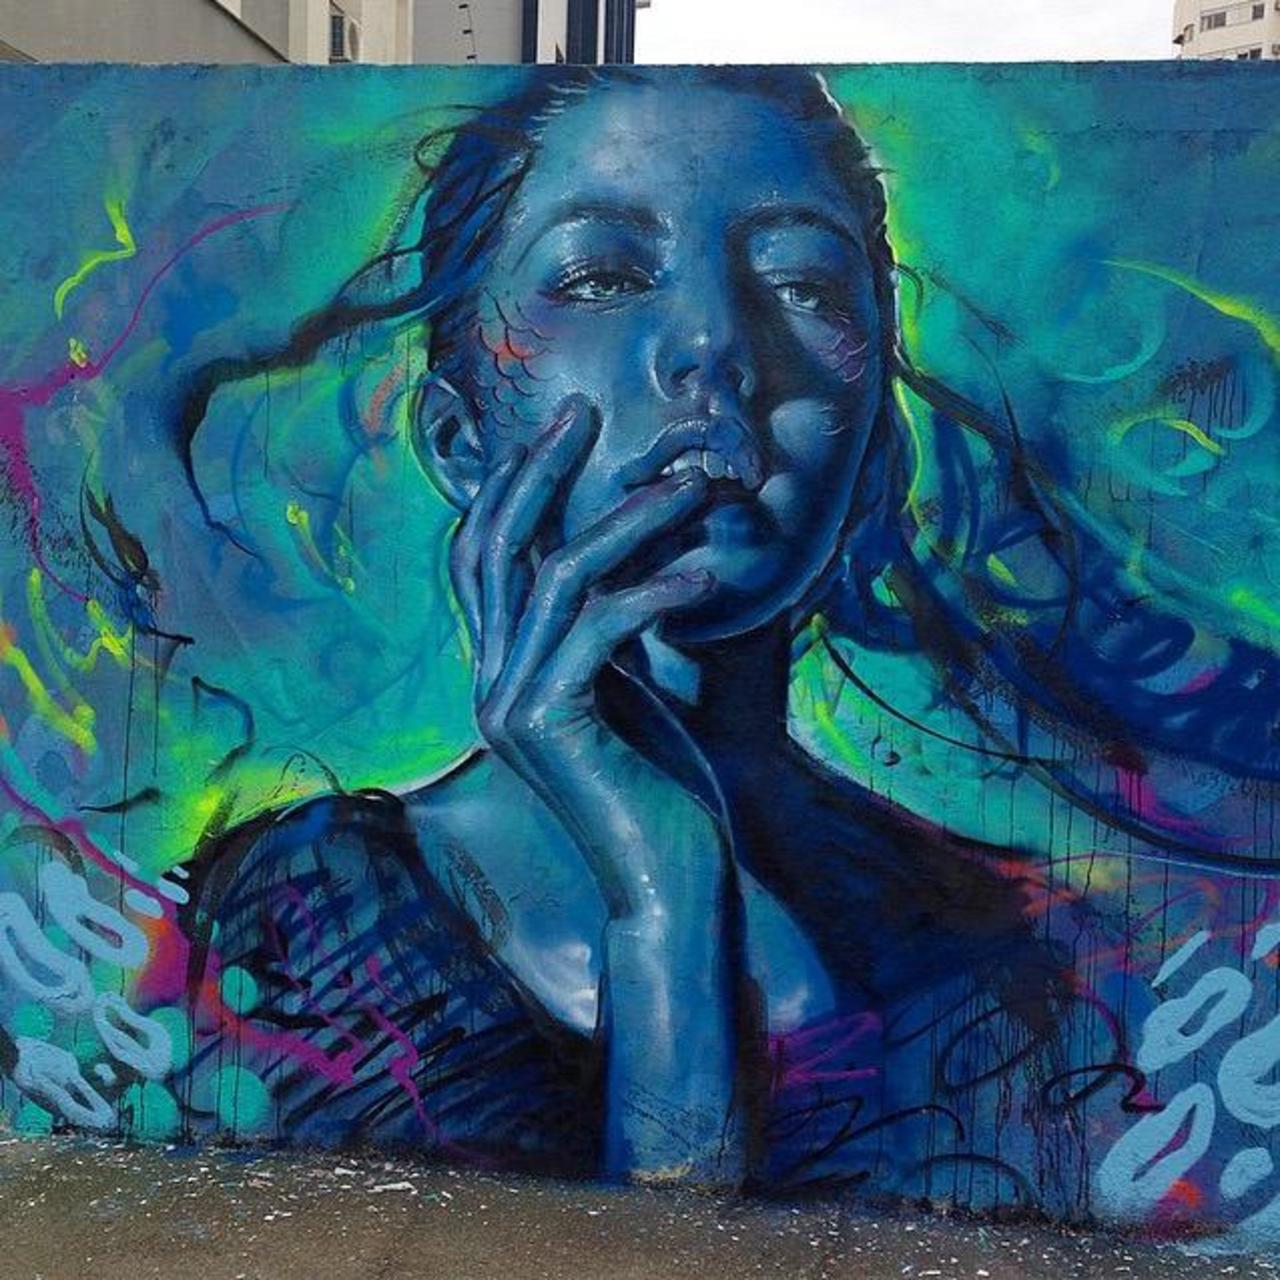 Thiago Valdi new Street Art piece titled 'Day Dreamer'

#art #mural #graffiti #streetart http://t.co/9jpcbjoZ0w